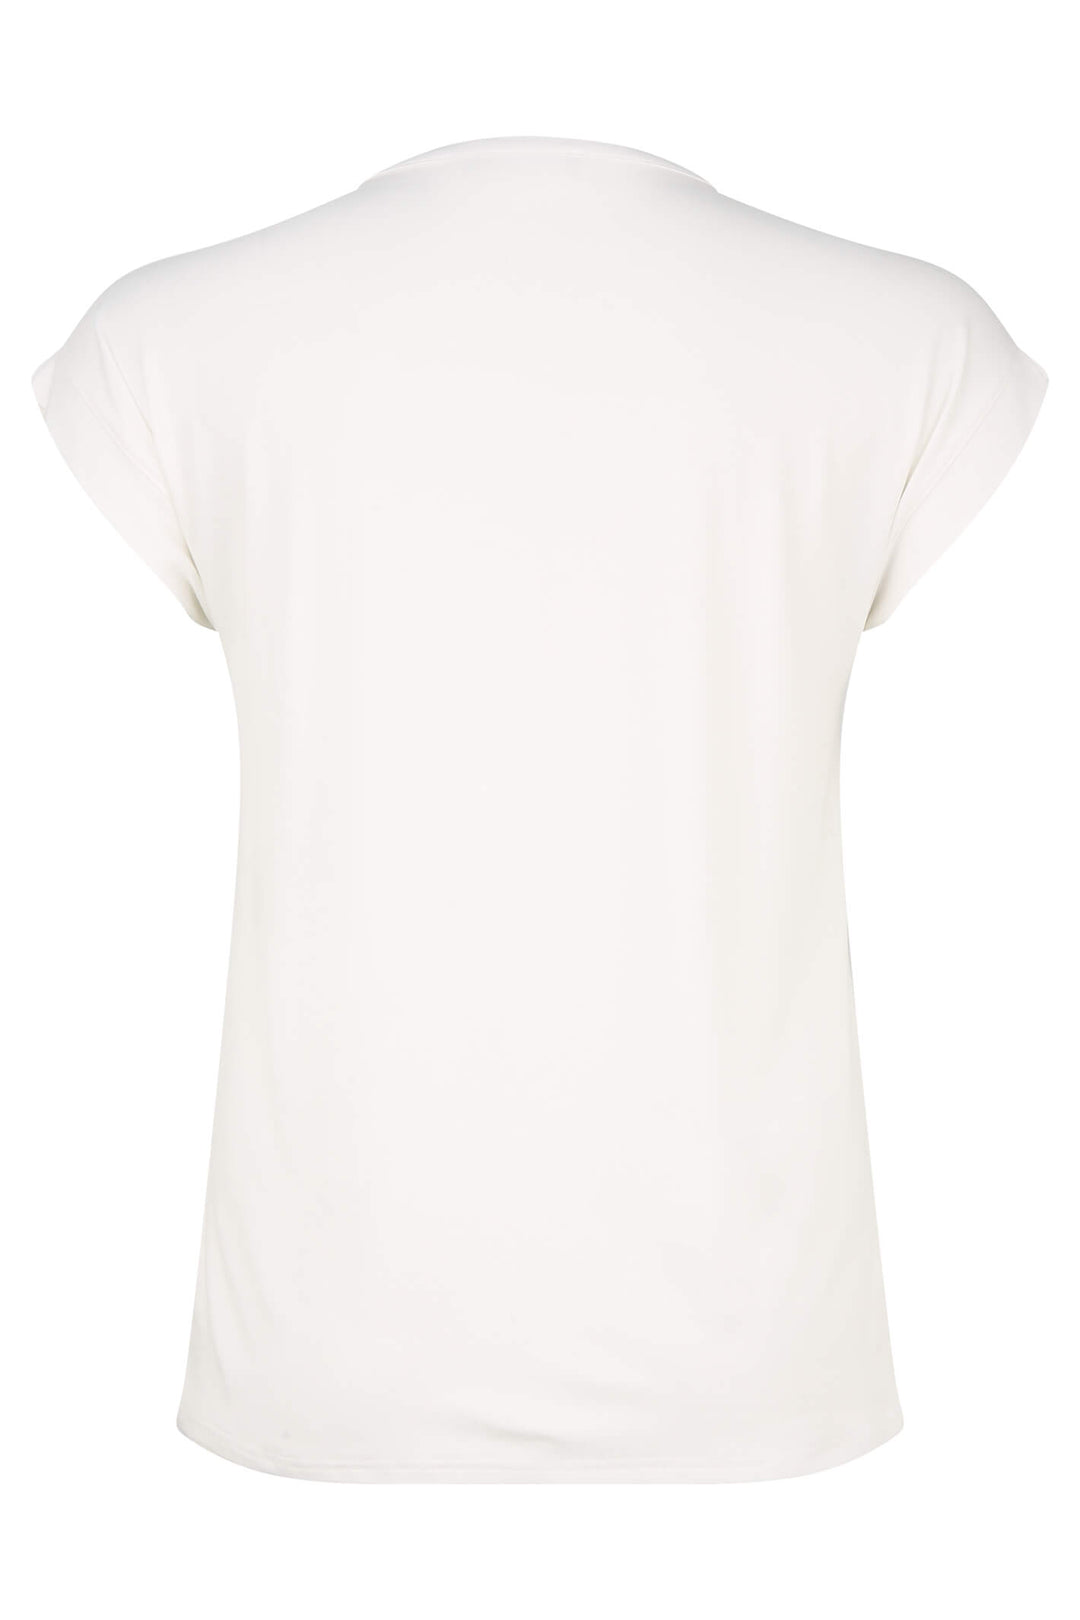 Doris Streich 243 146 88 Print White T-Shirt With Rhinestones - Shirley Allum Boutique